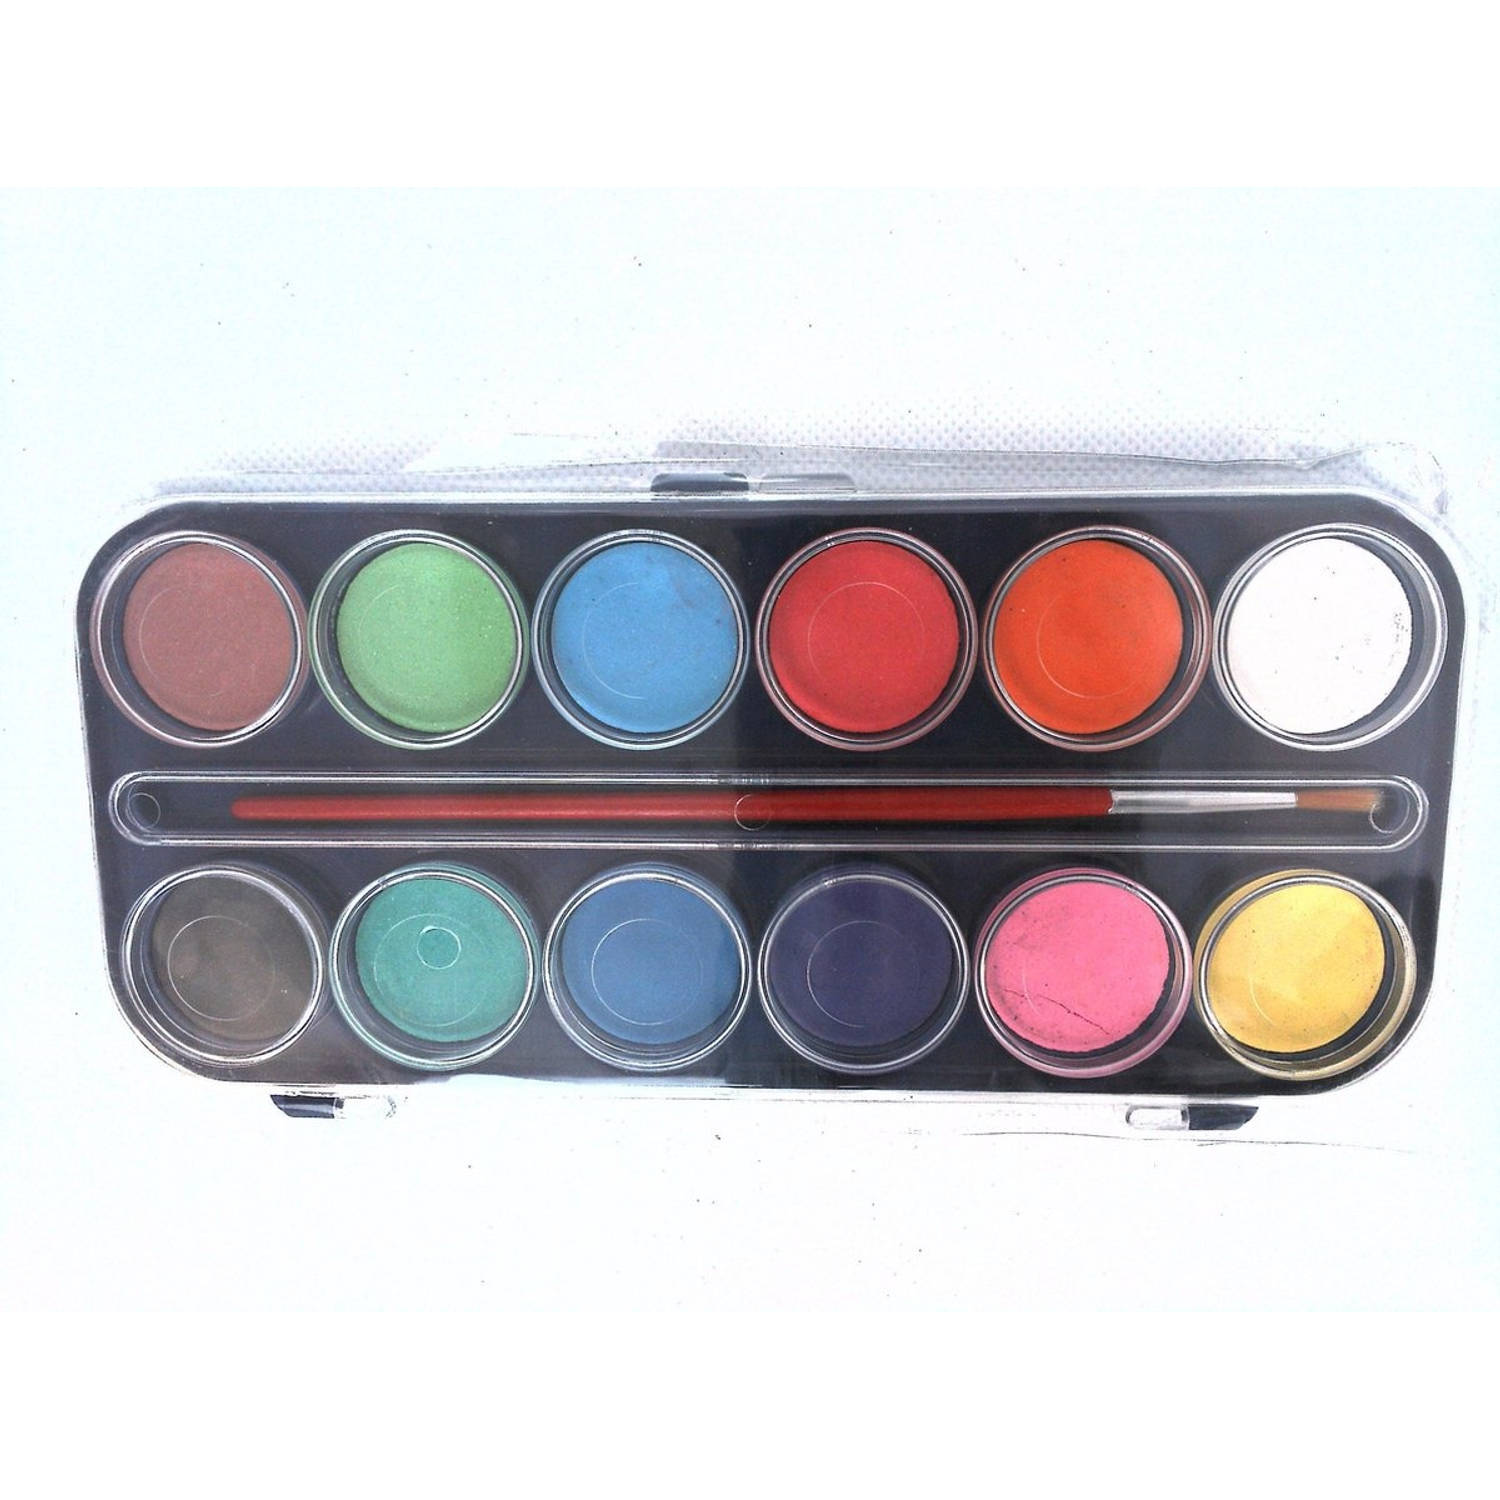 Waterverf | 12 kleuren | In handig doosje | Met penseel | Verven | Knutselen | Hobby